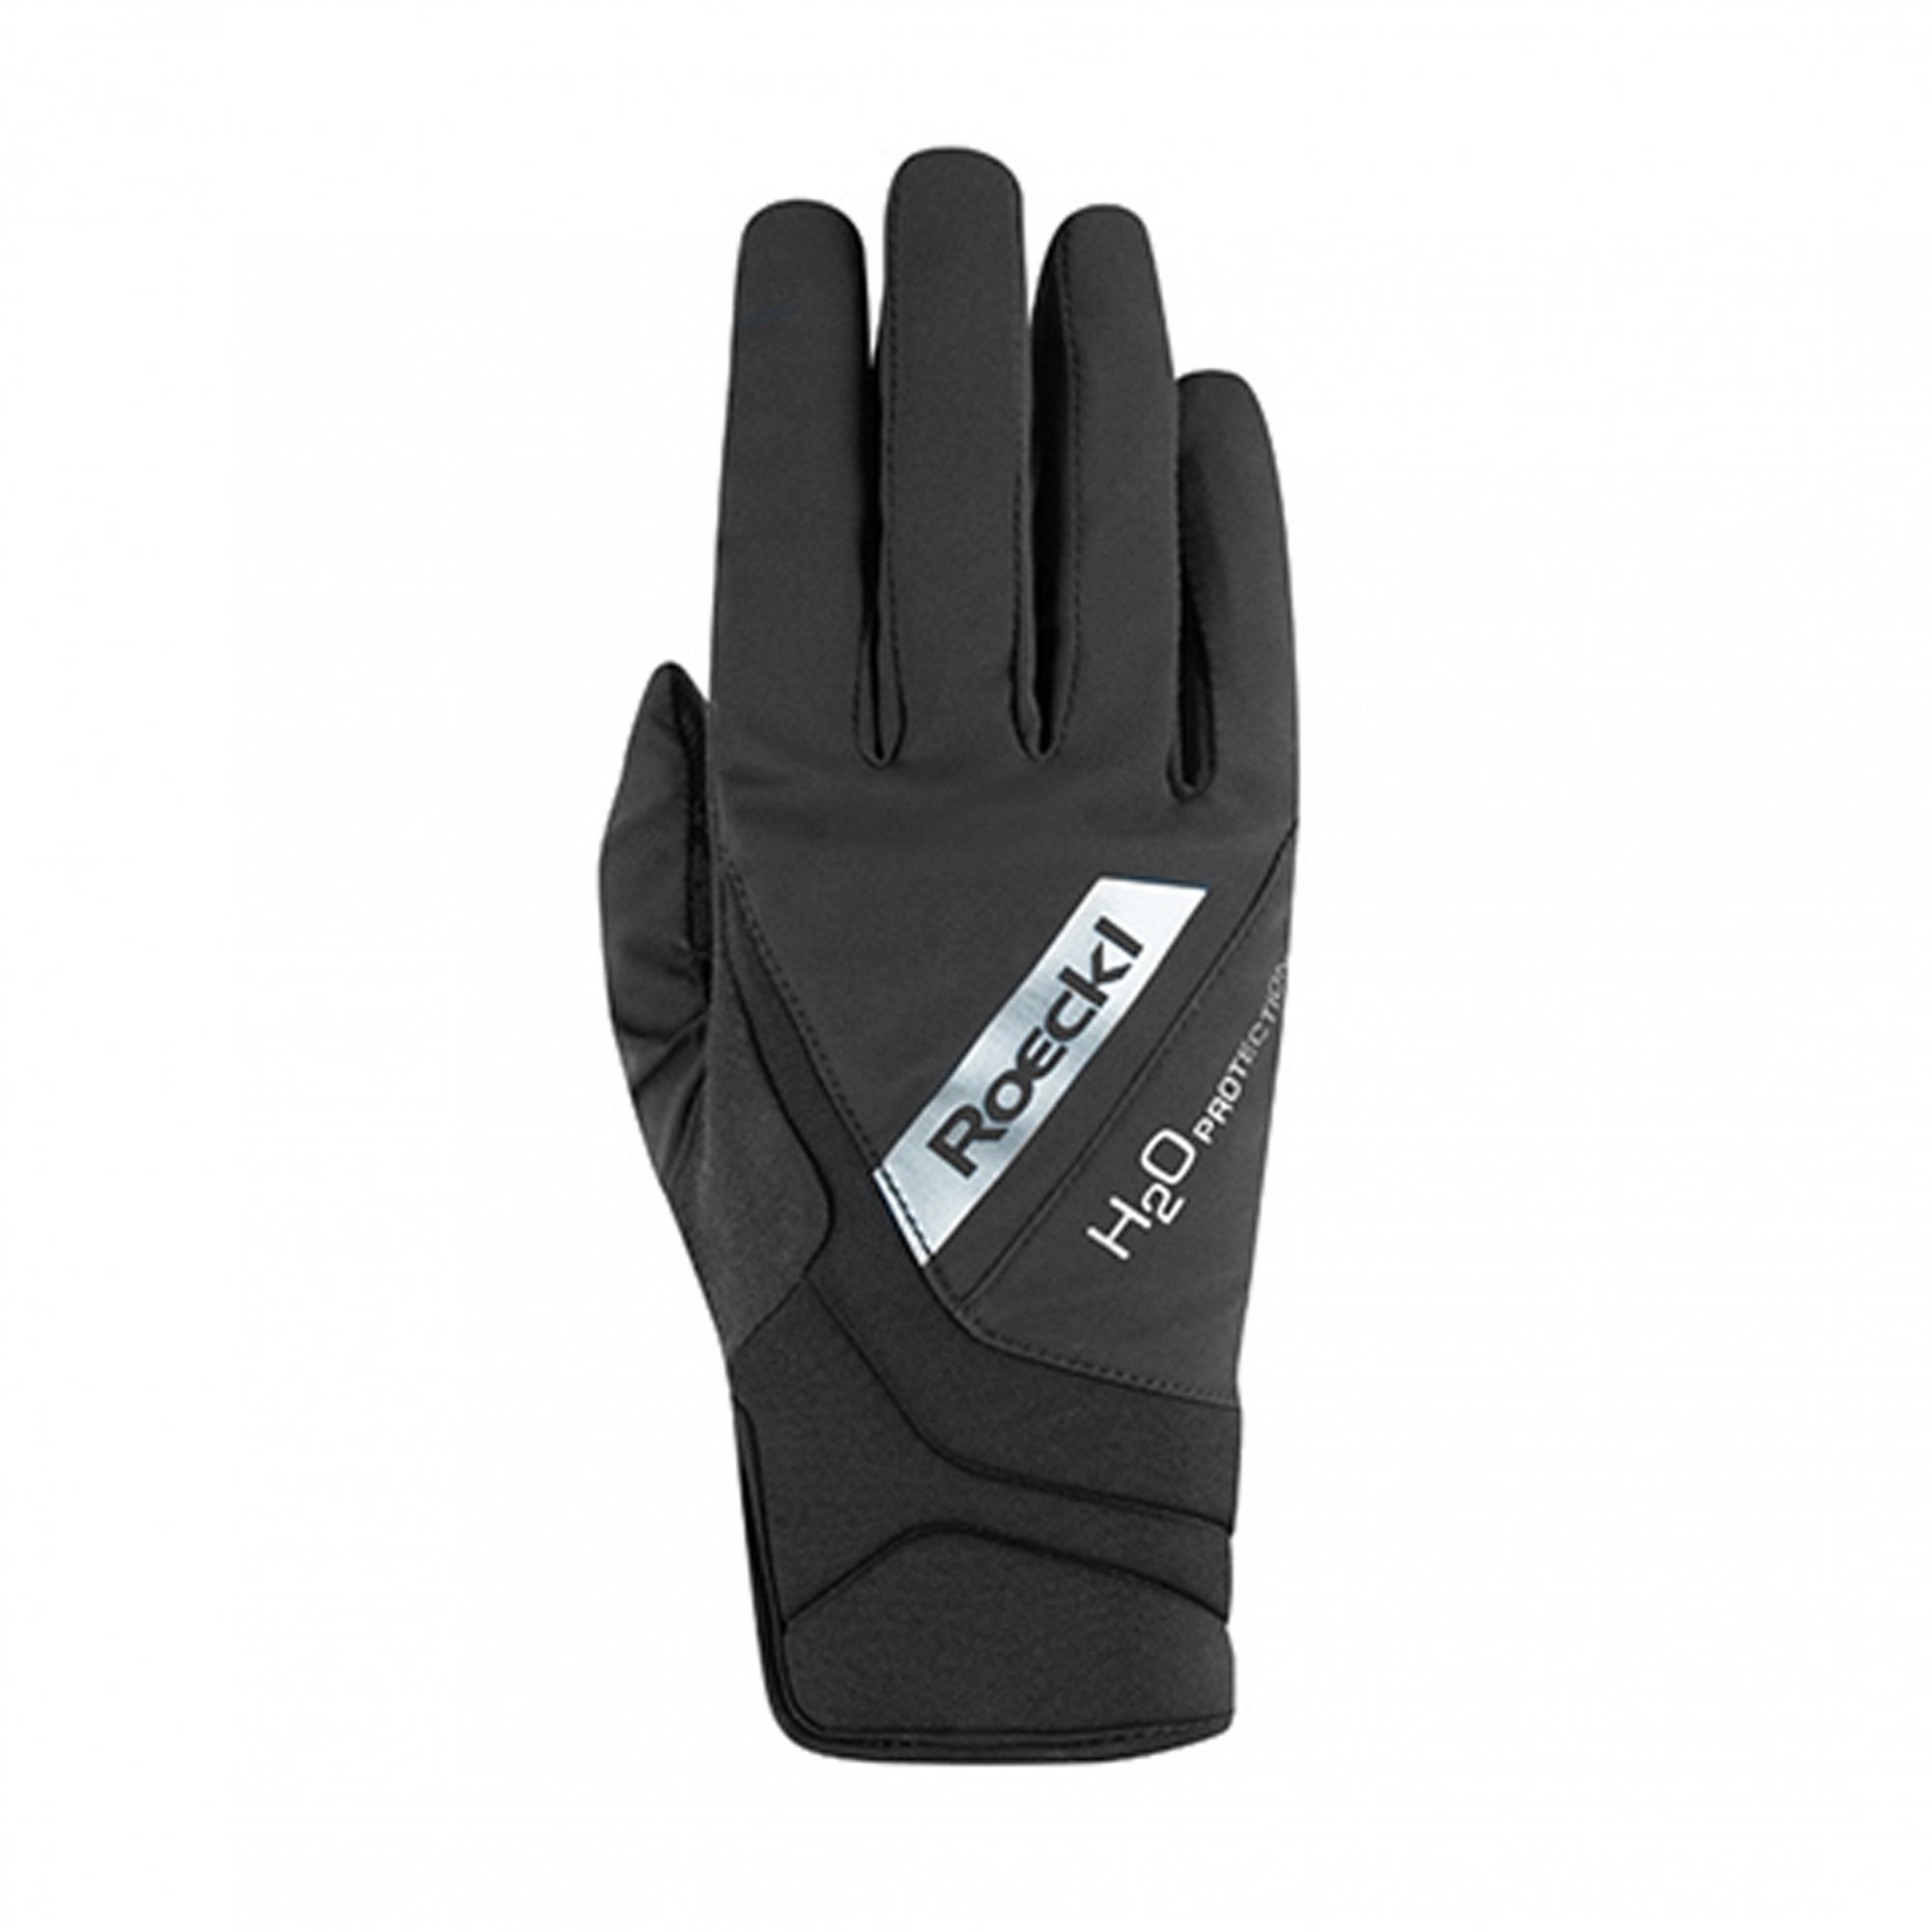 Roeckl Winter Waregem Glove